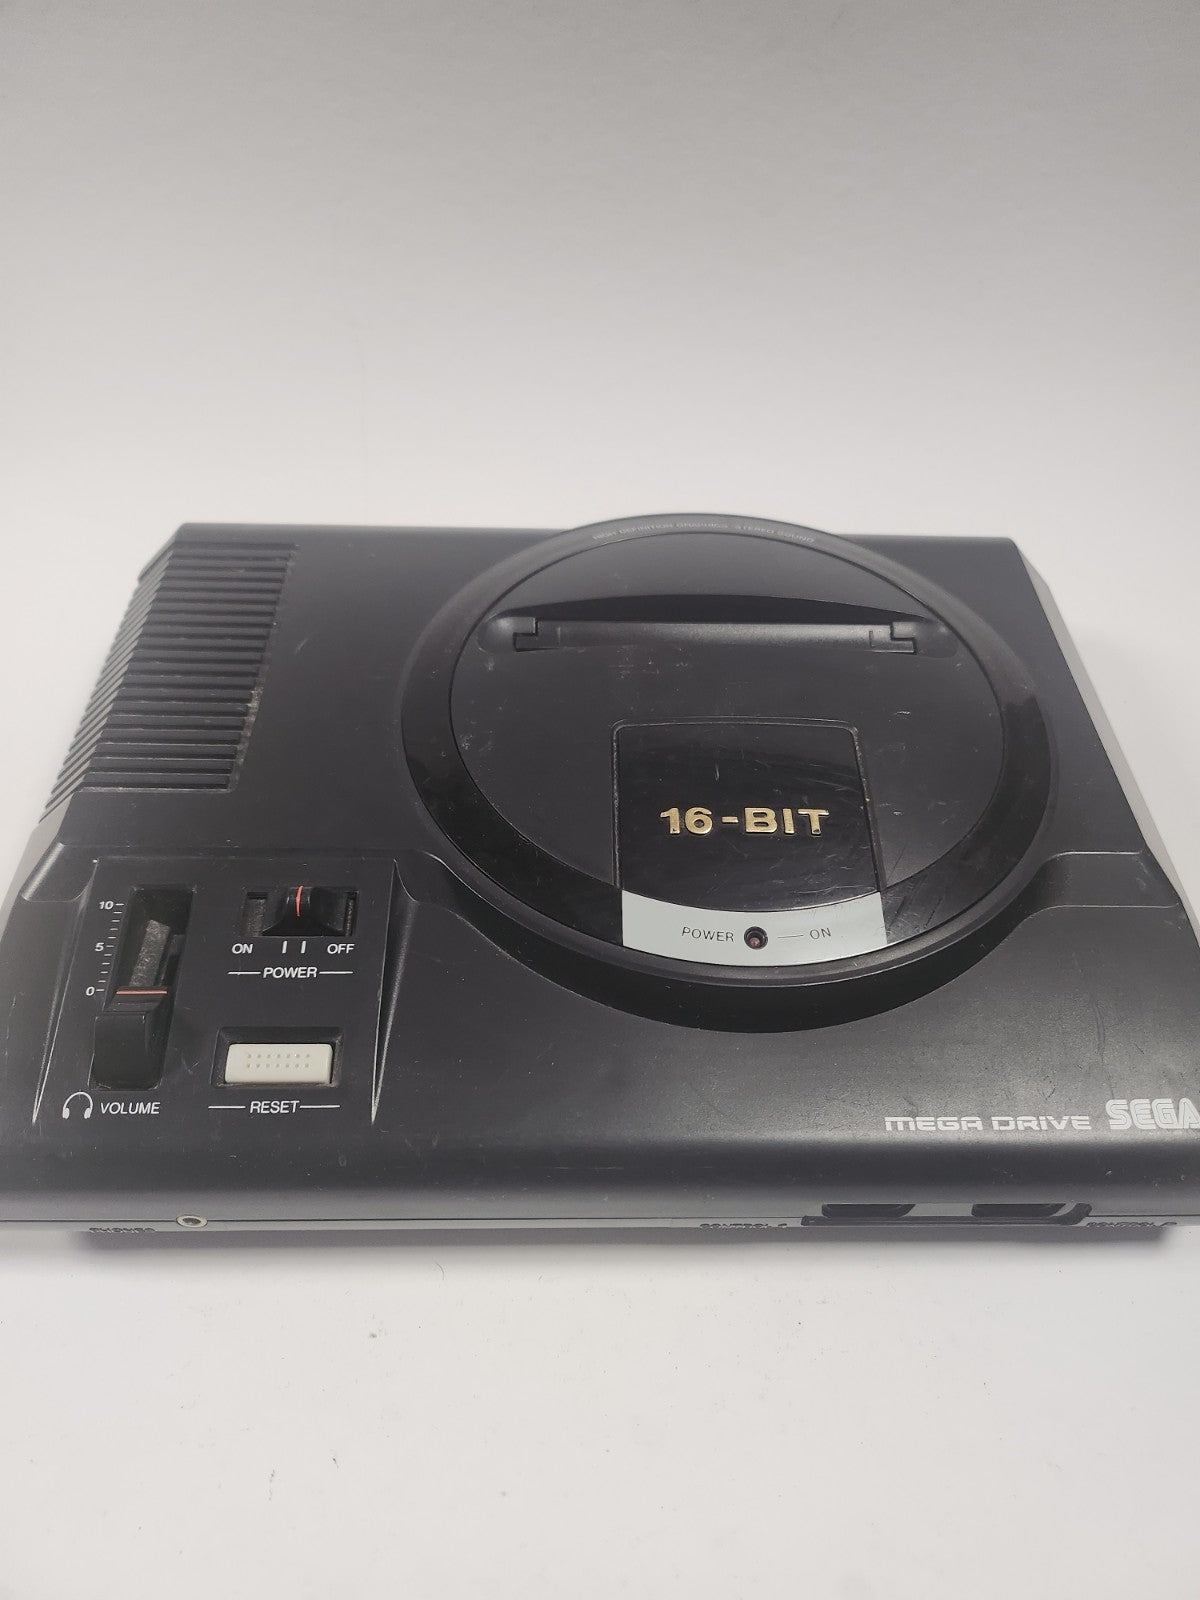 Sega Mega Drive 16-Bit mit 2 Controllern und allen Kabeln.